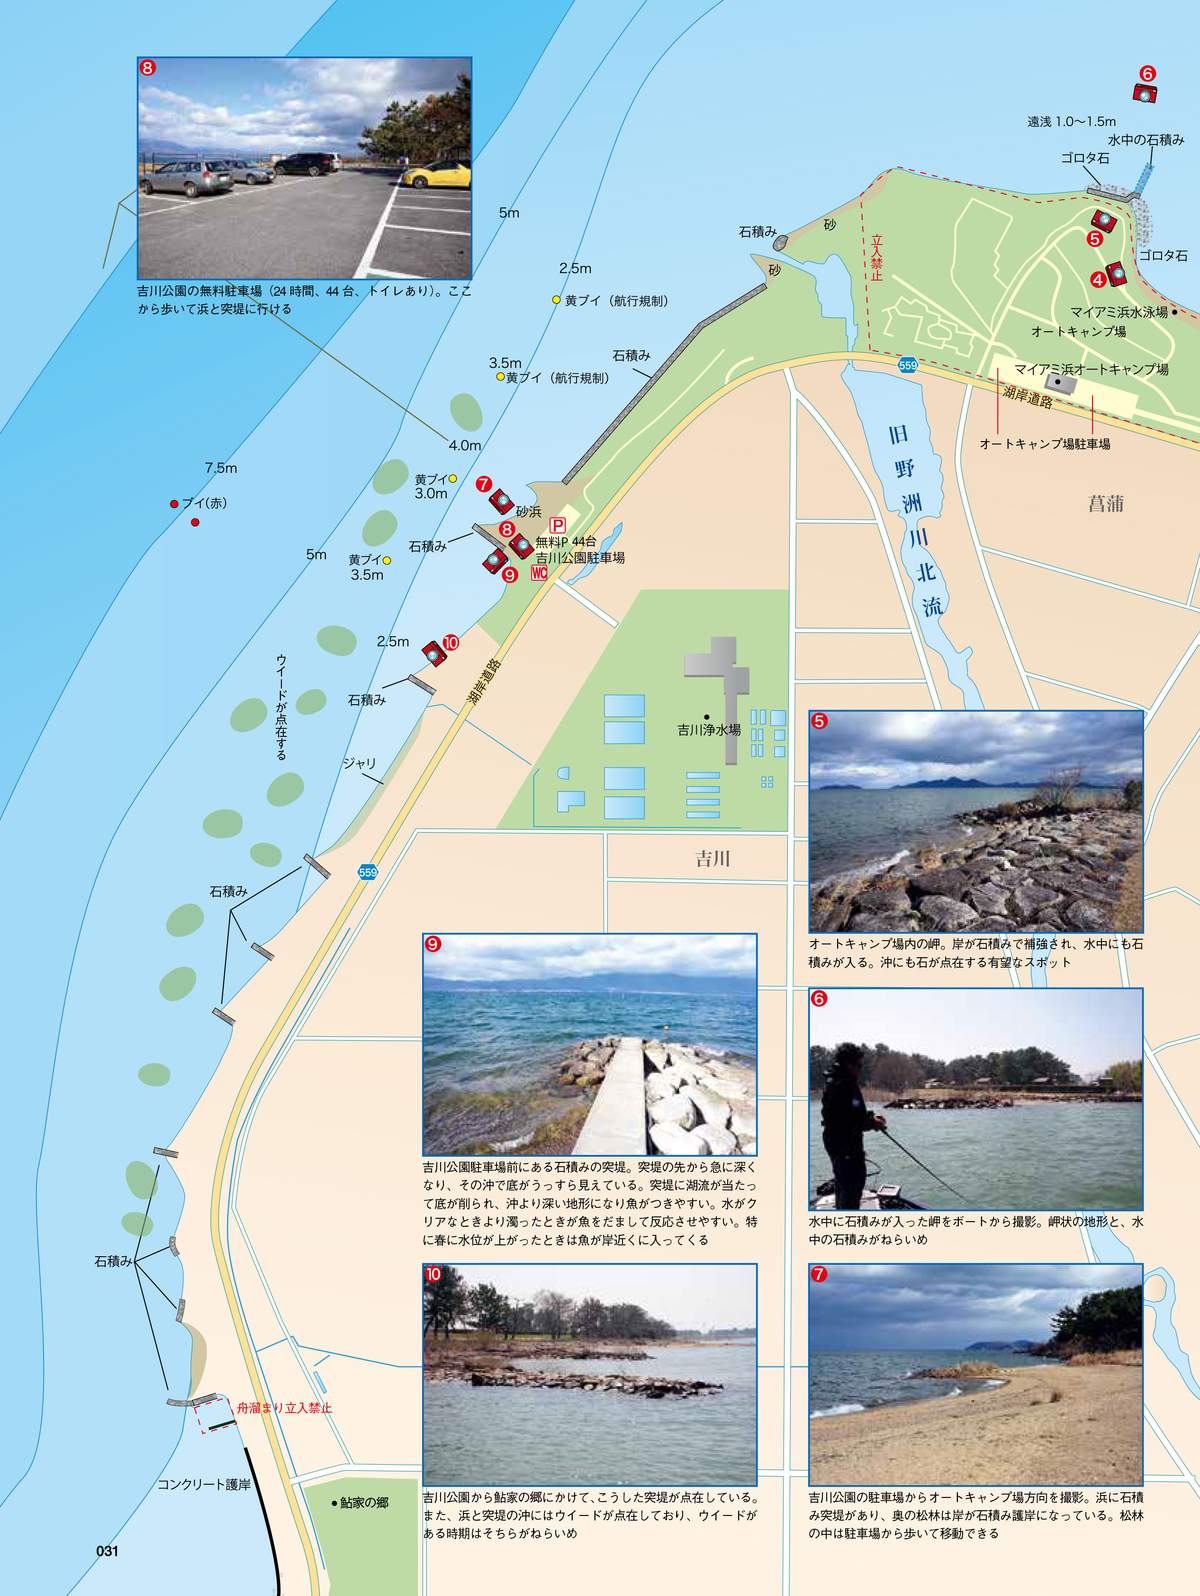 琵琶湖岸釣りmap南湖 発売 琵琶湖オカッパリポイントマップの決定版 Basser